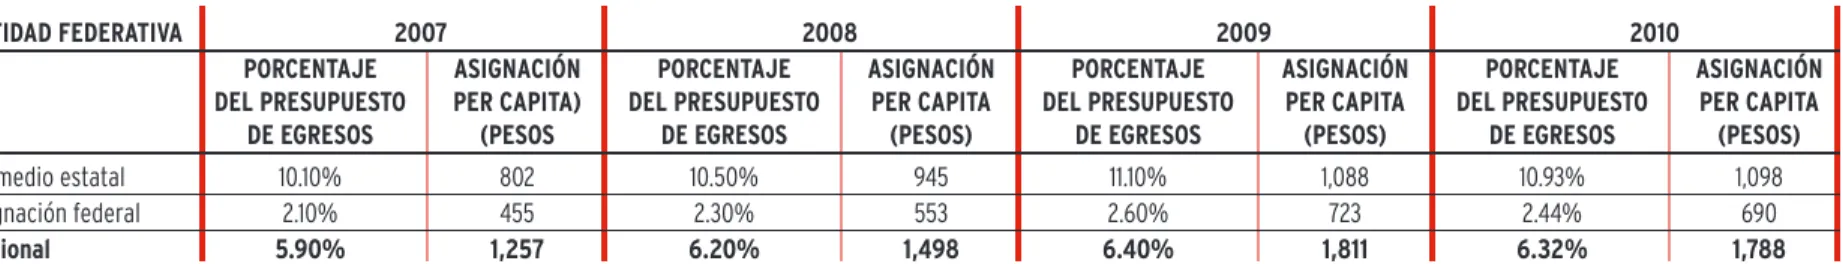 Tabla 6. Asignación per capita y proporción de asignaciones presupuestales estatales 2007-2010 